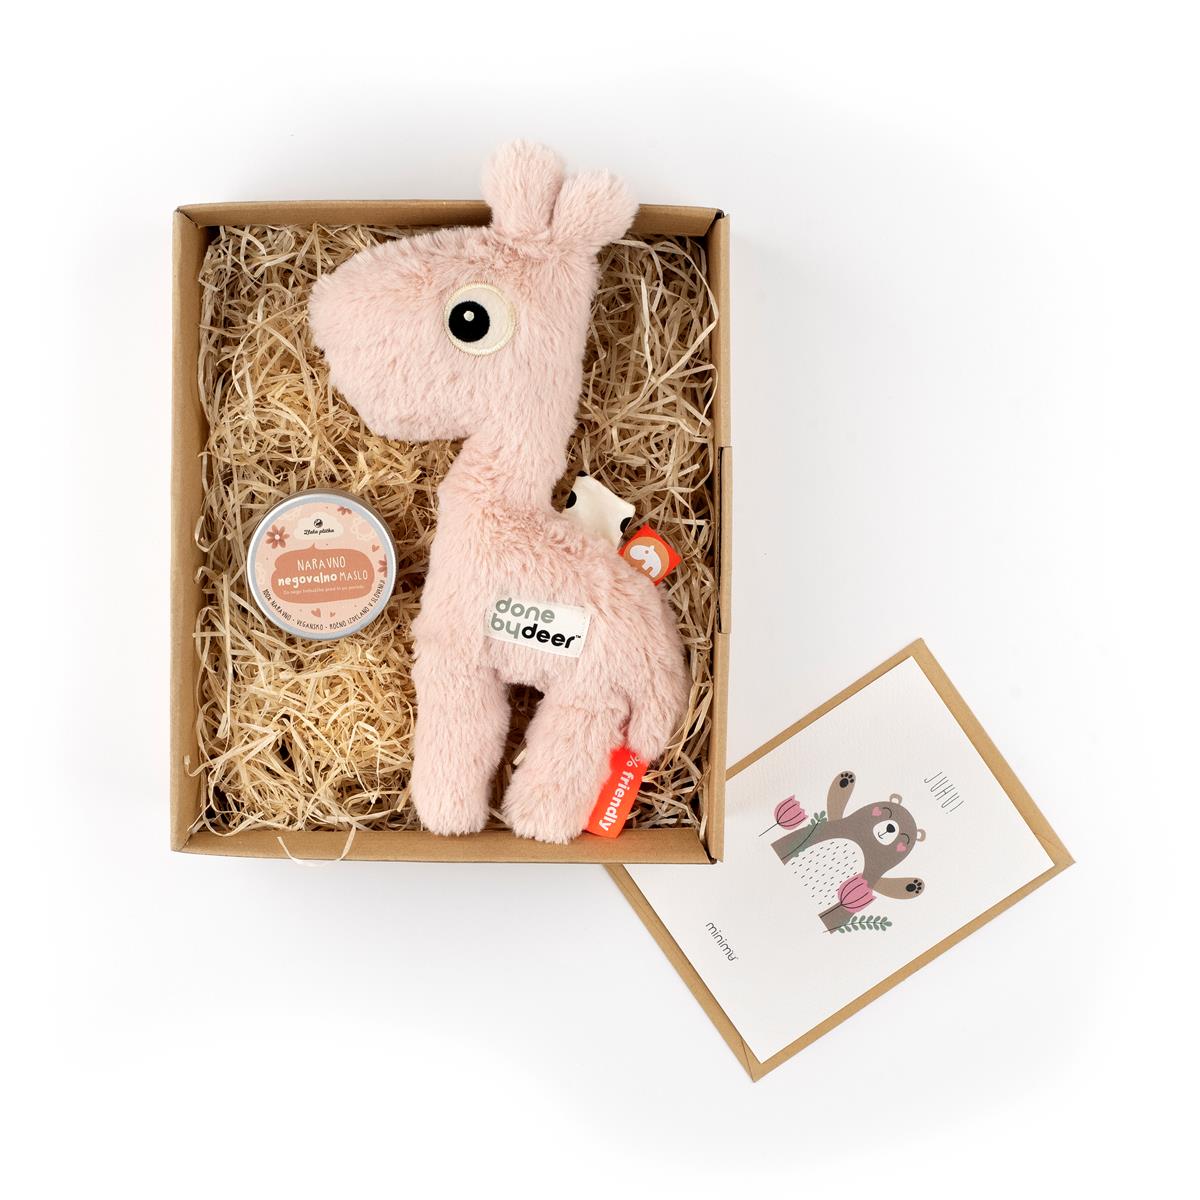 Softi Žirafka2 darilo ob rojstvu telegram v porodnisnico voščilo rojstvo porodnišnica